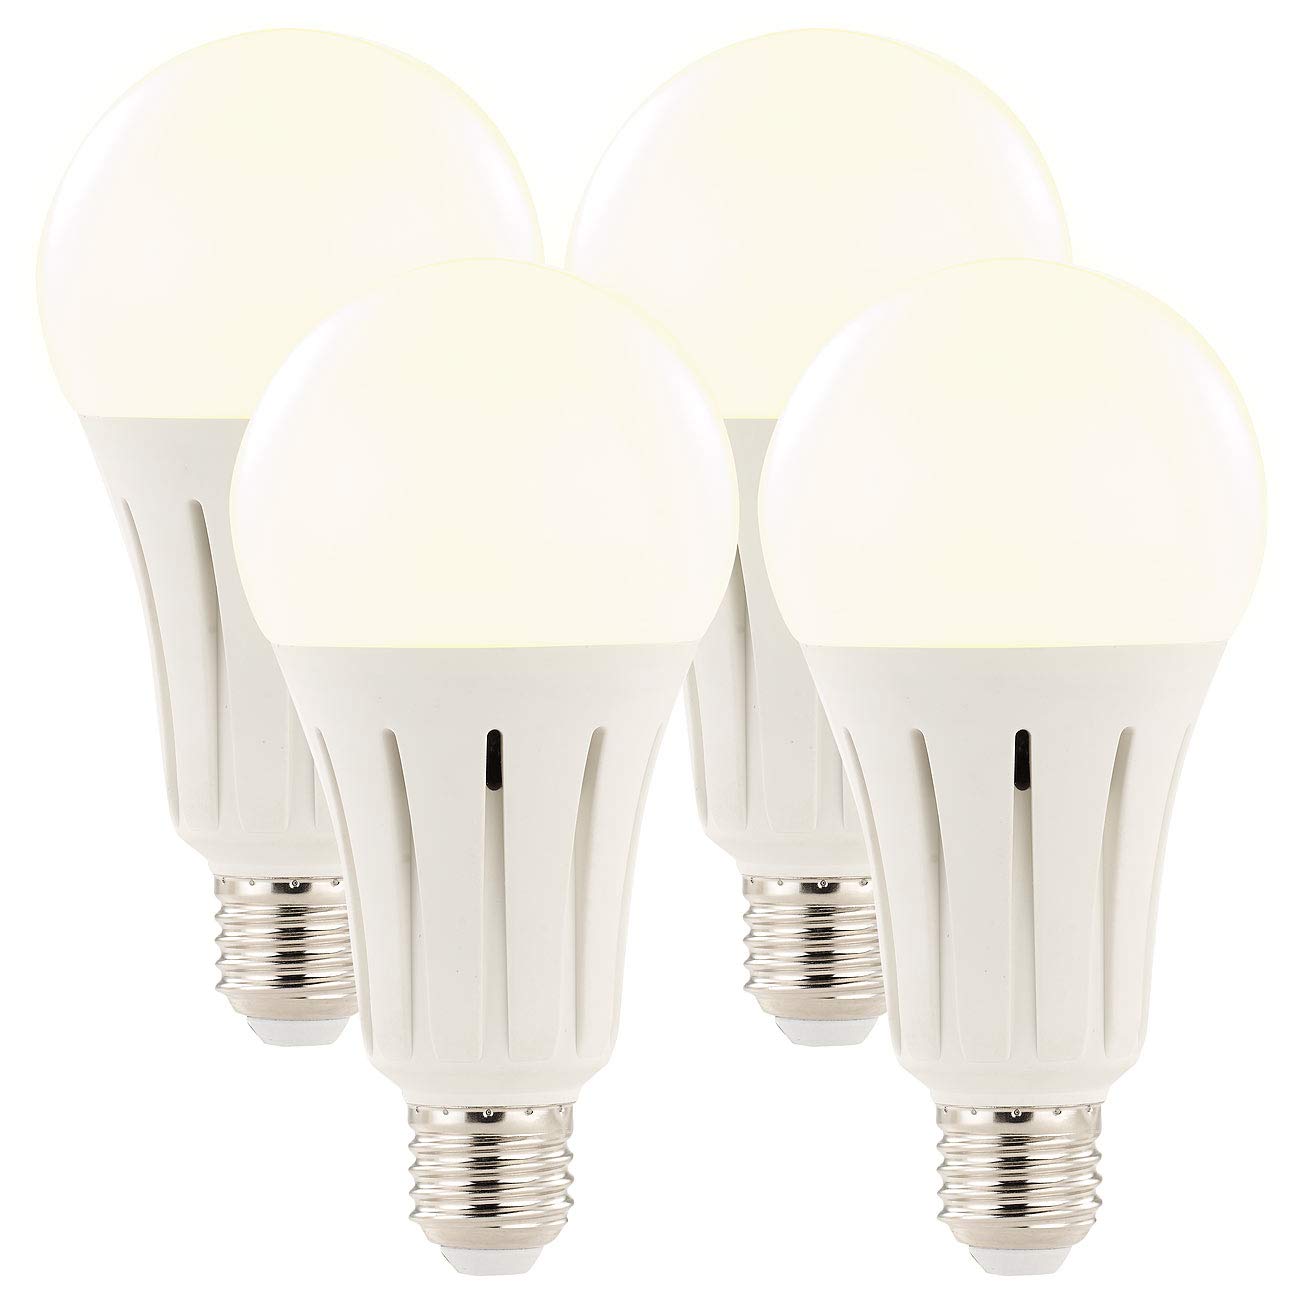 Luminea LED Birnen E27: High-Power-LED-Lampe E27, 23 Watt, 2.400 Lumen, 3000 K, 4er-Set (Energiesparlampen, LED Leuchtmittel E27 neutralweiss, Wohnzimmerleuchten)